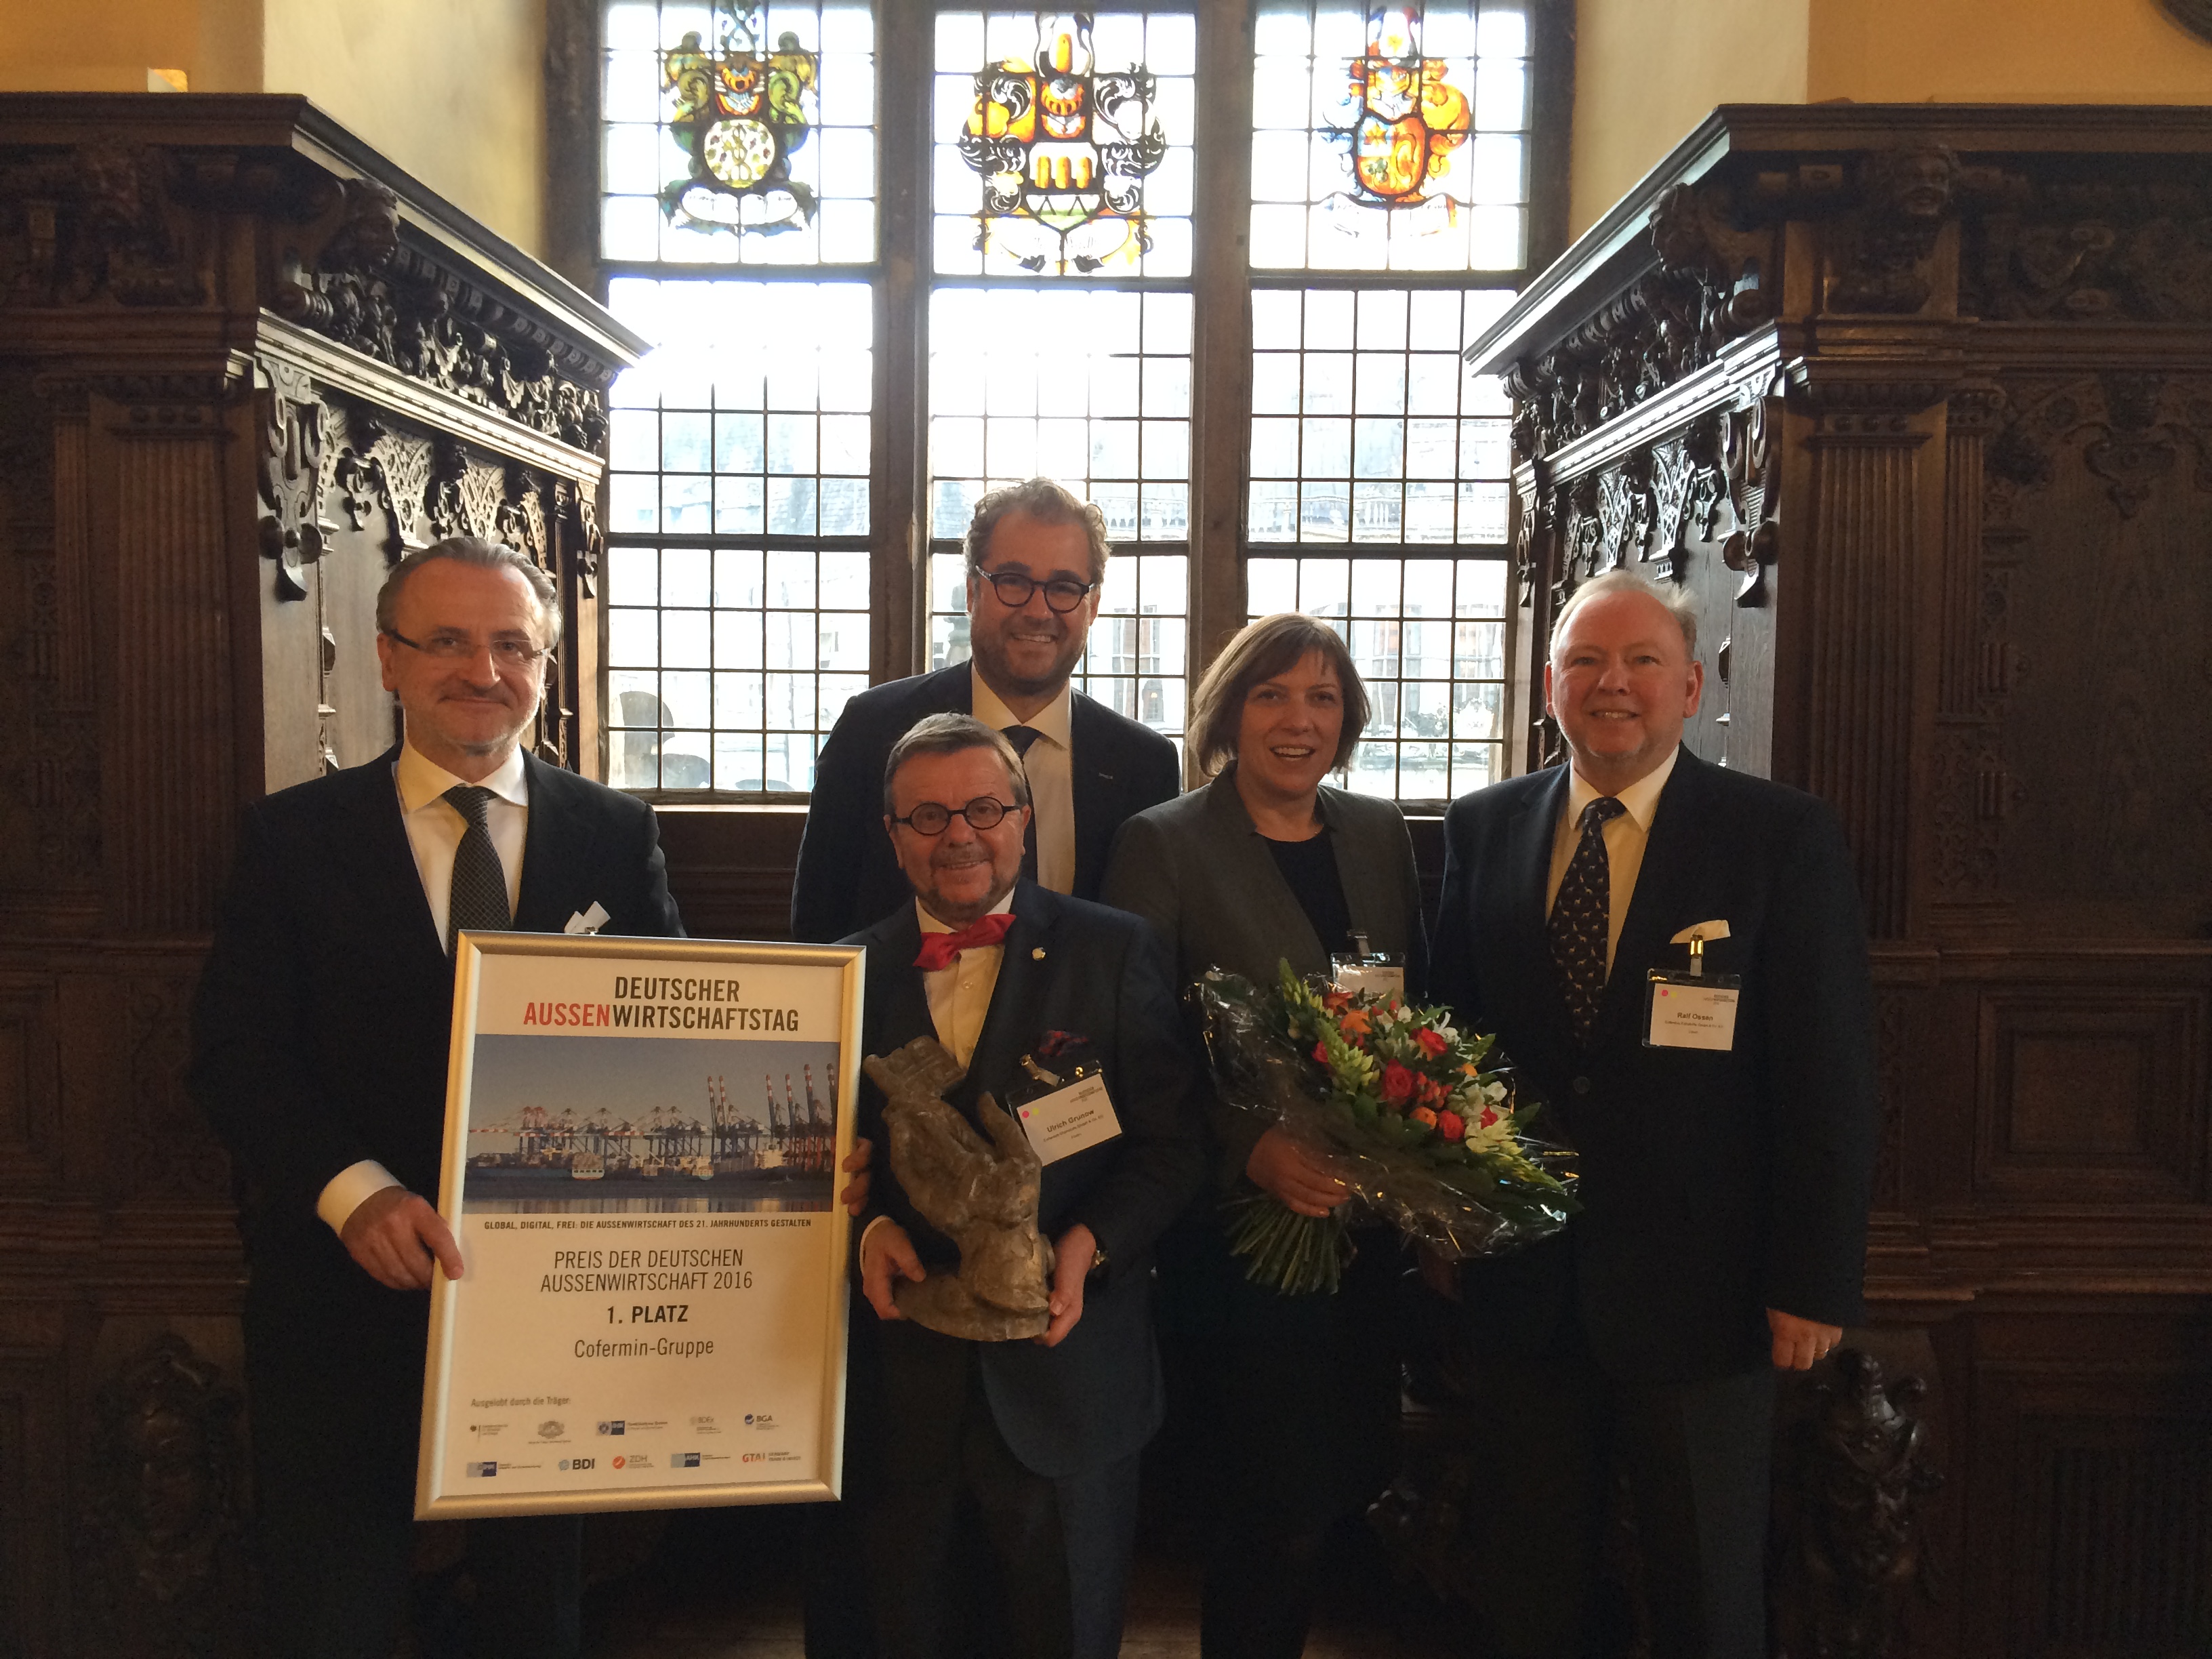 Cofermin-Gruppe, Träger des Preises der Deutschen Außenwirtschaft 2016